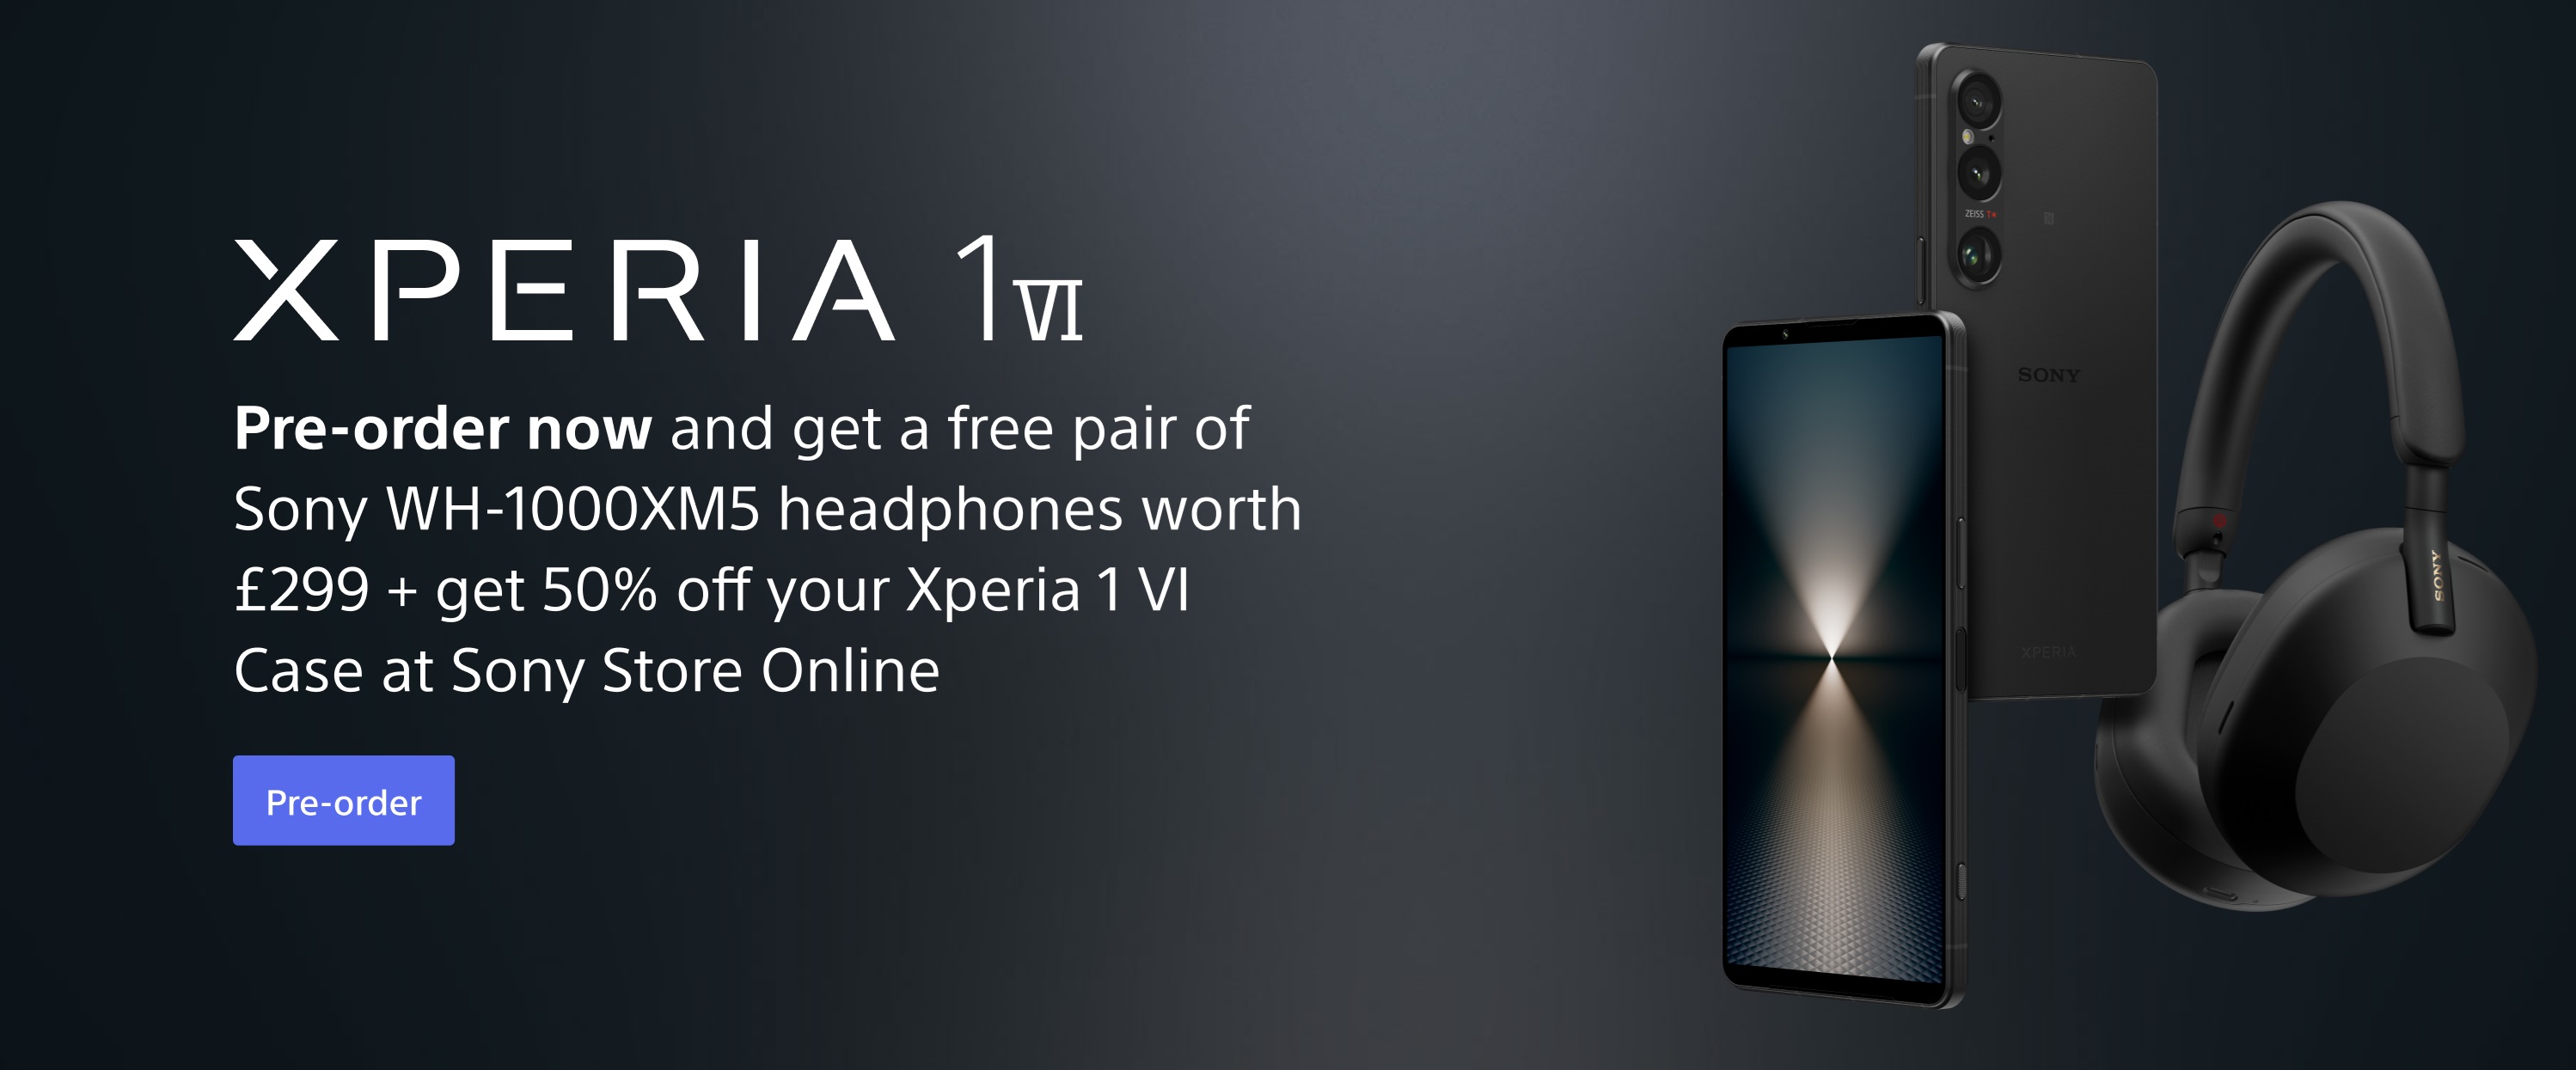 Объявлено предложение предварительного заказа Sony Xperia 1 VI в Великобритании